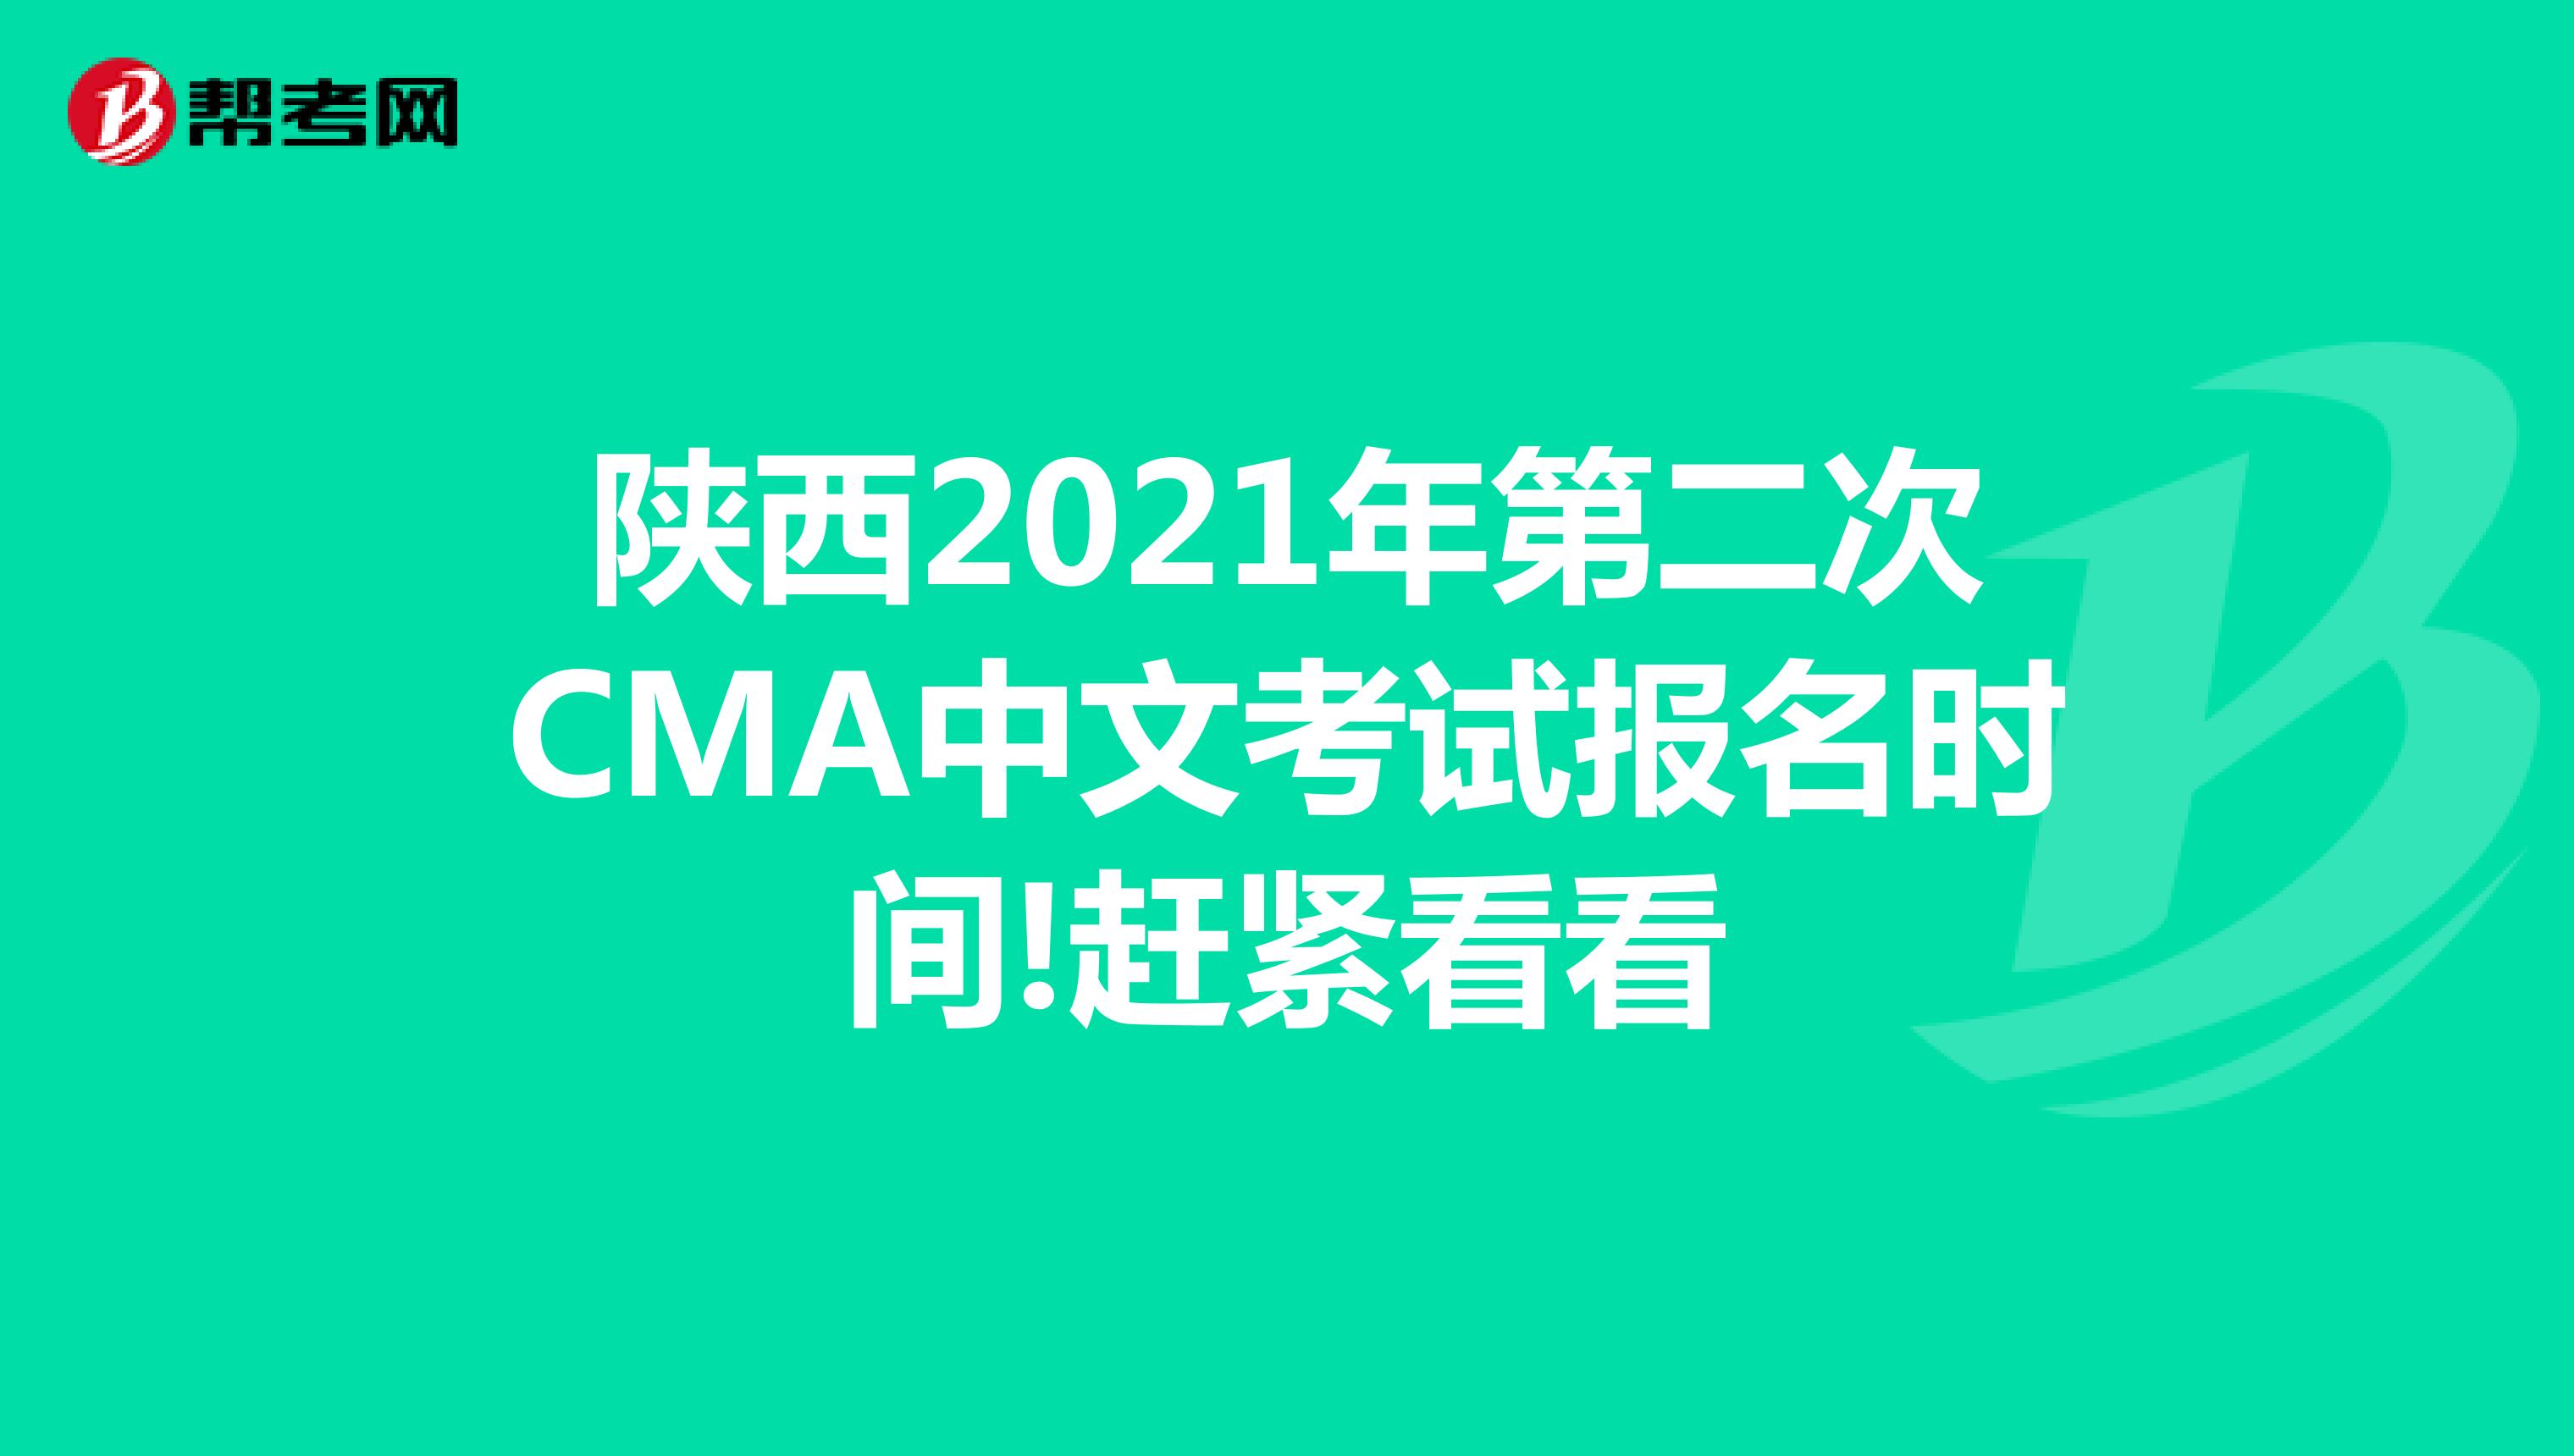 陕西2021年第二次CMA中文考试报名时间!赶紧看看